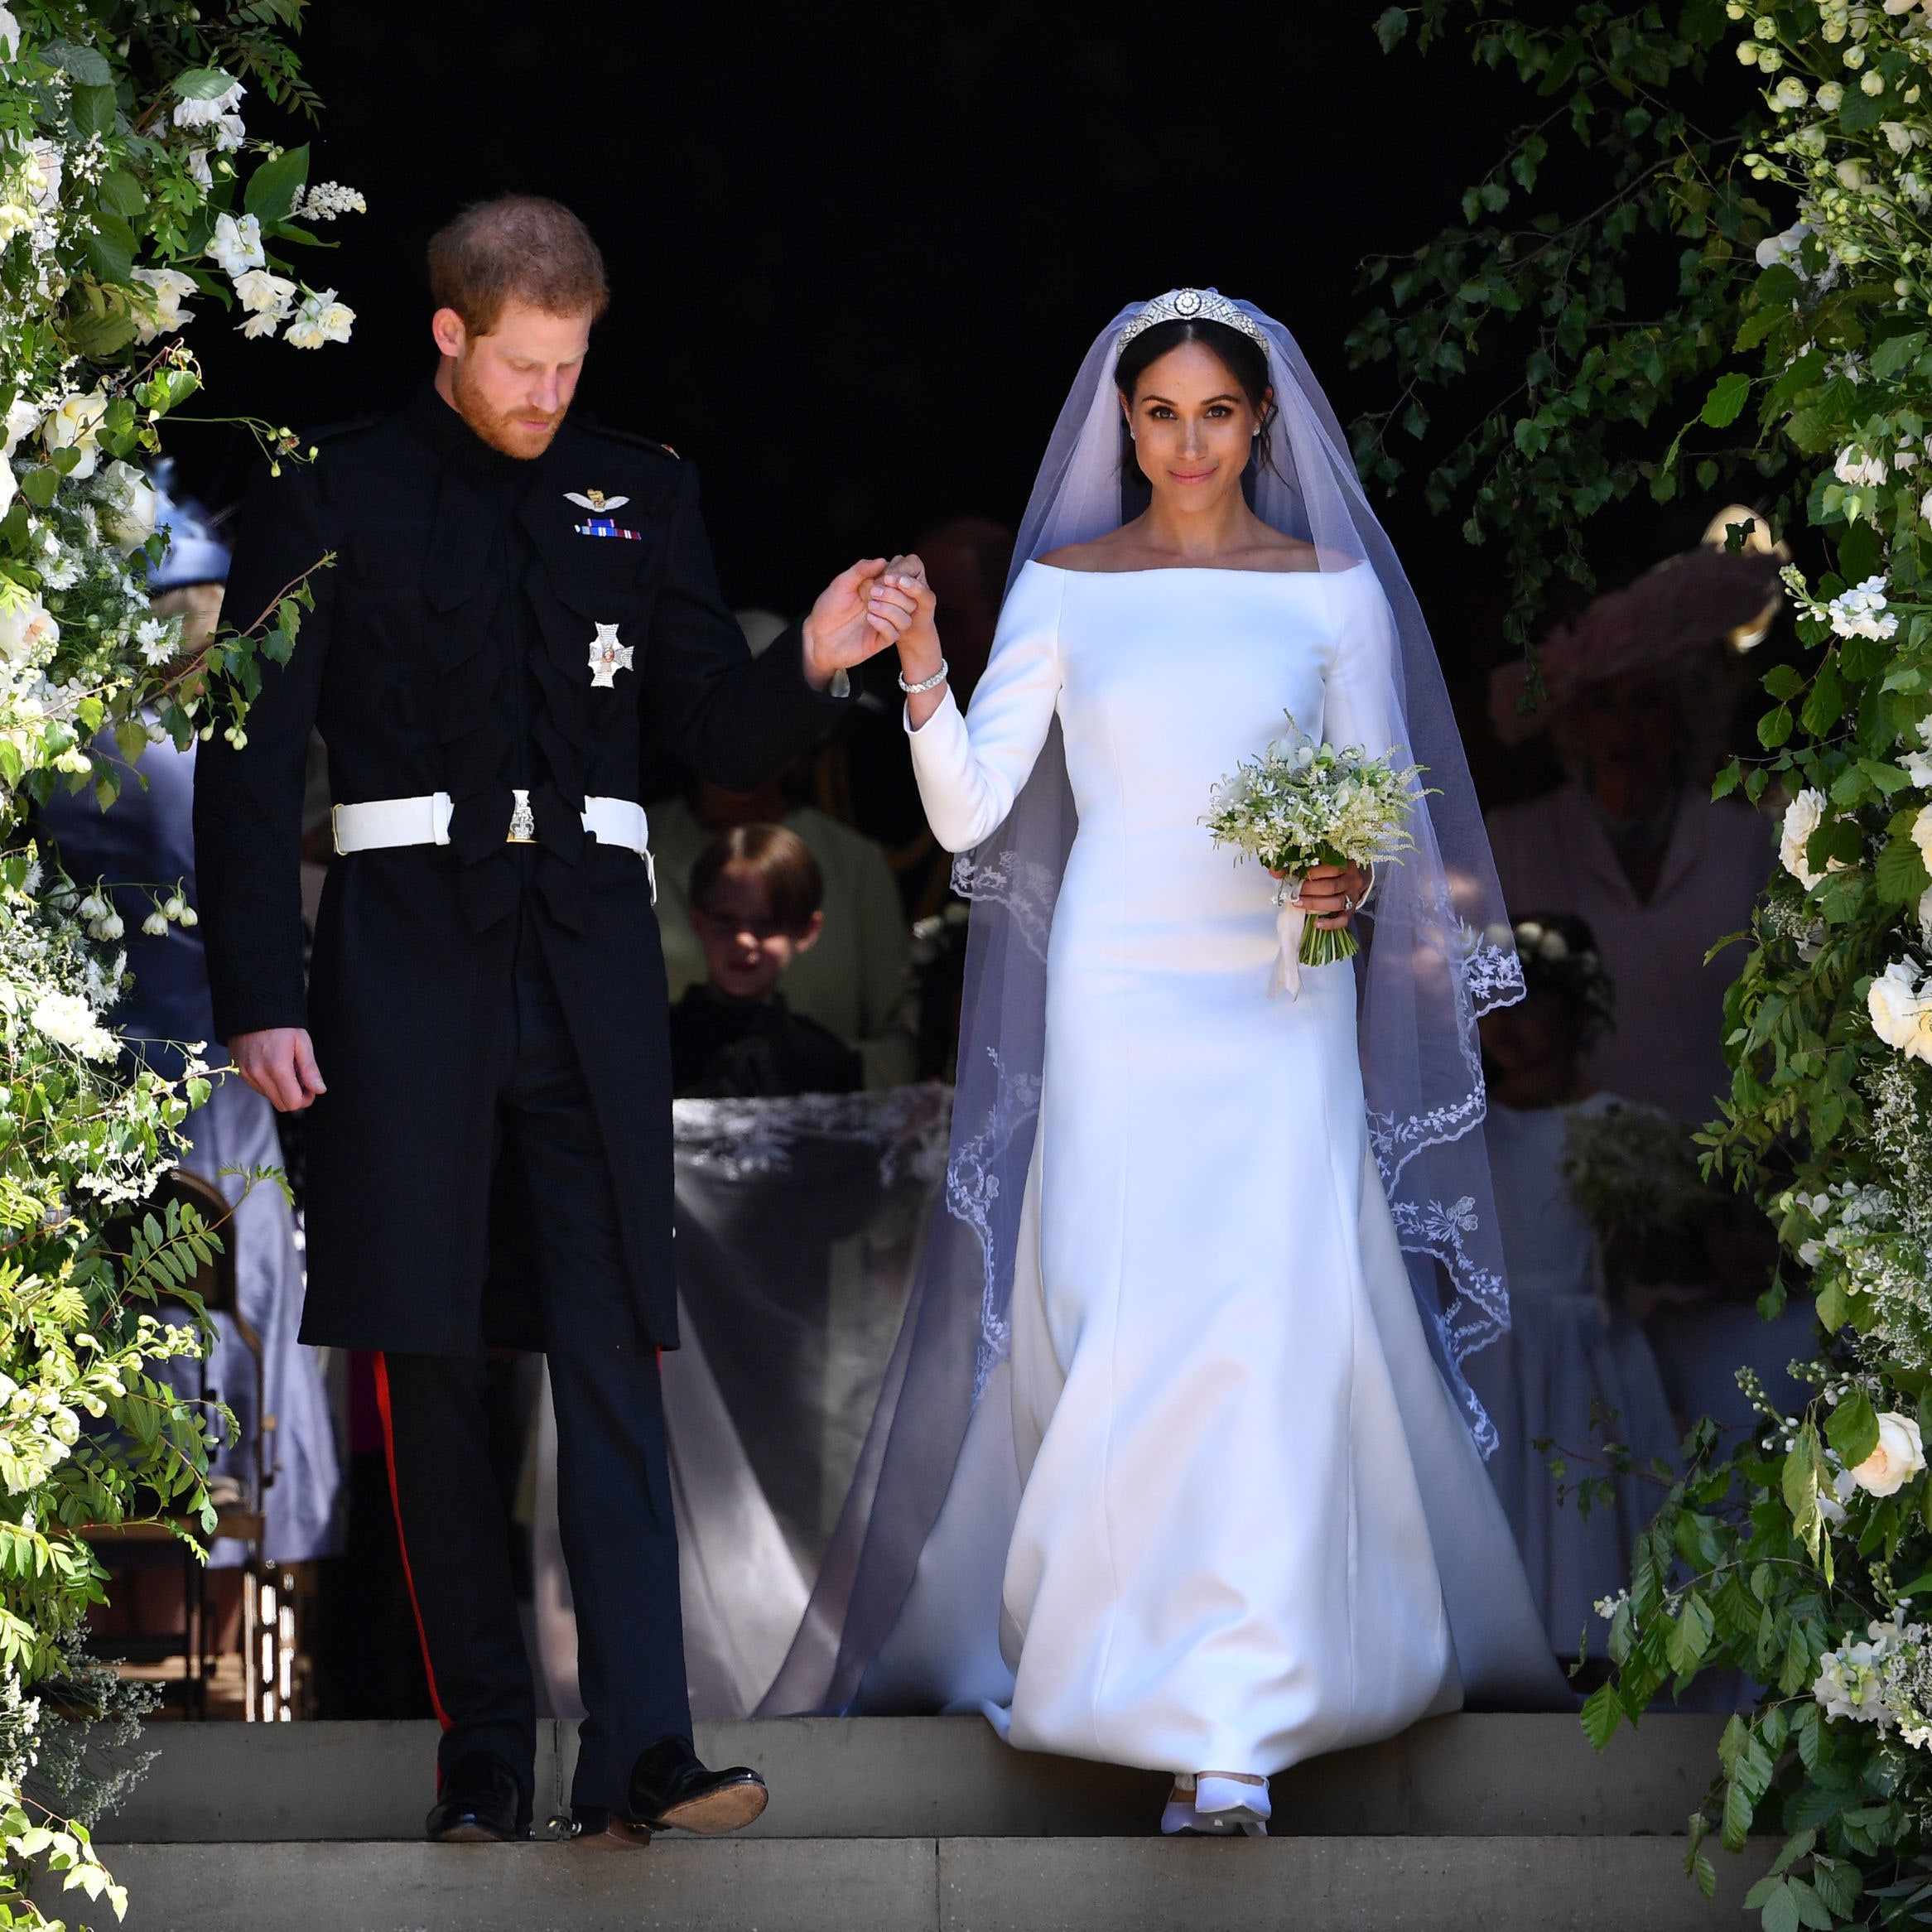 “Váy cưới của Meghan Markle” trở thành chủ đề và nguồn cảm hứng cho nhiều cô dâu trên thế giới sau hôn lễ diễn ra vào tháng 5/2018.